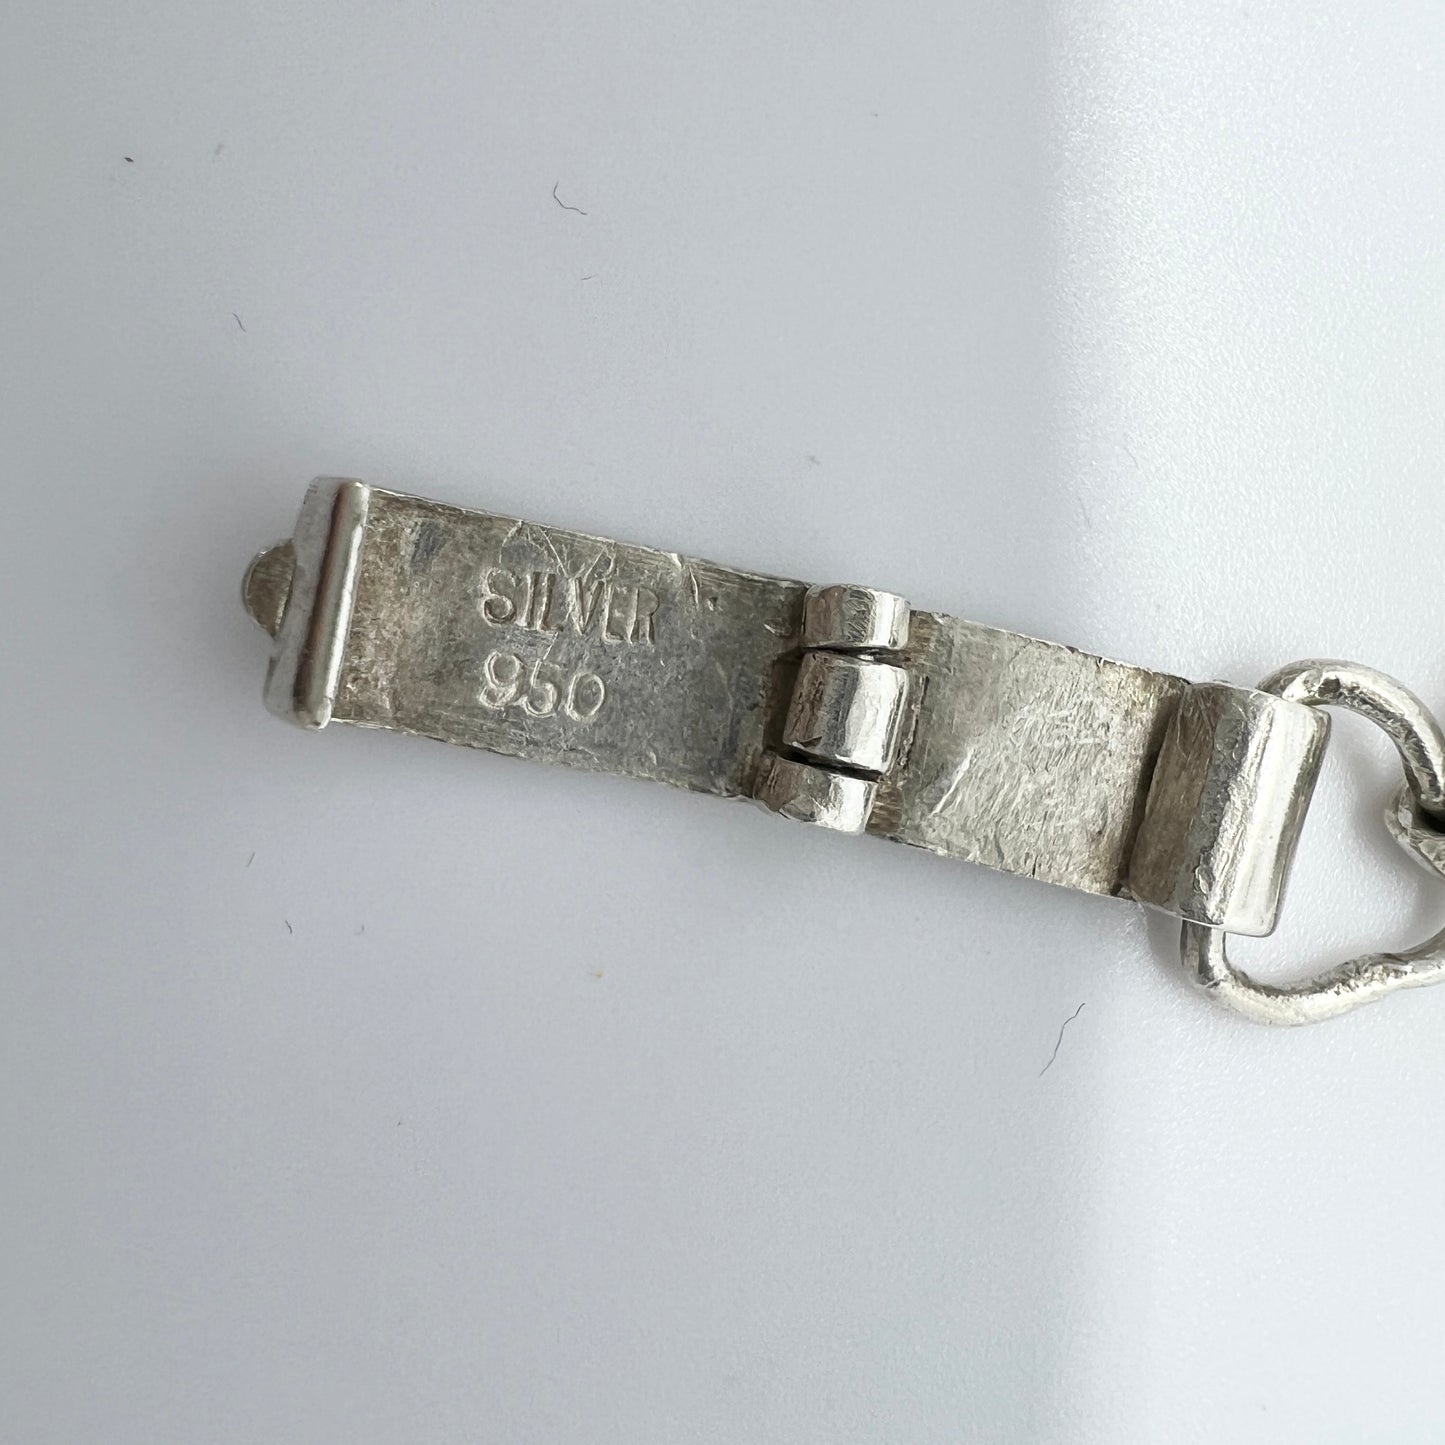 TOYO KOKI CPO, Japan 1940-50s. Sterling 950 Silver Bracelet.